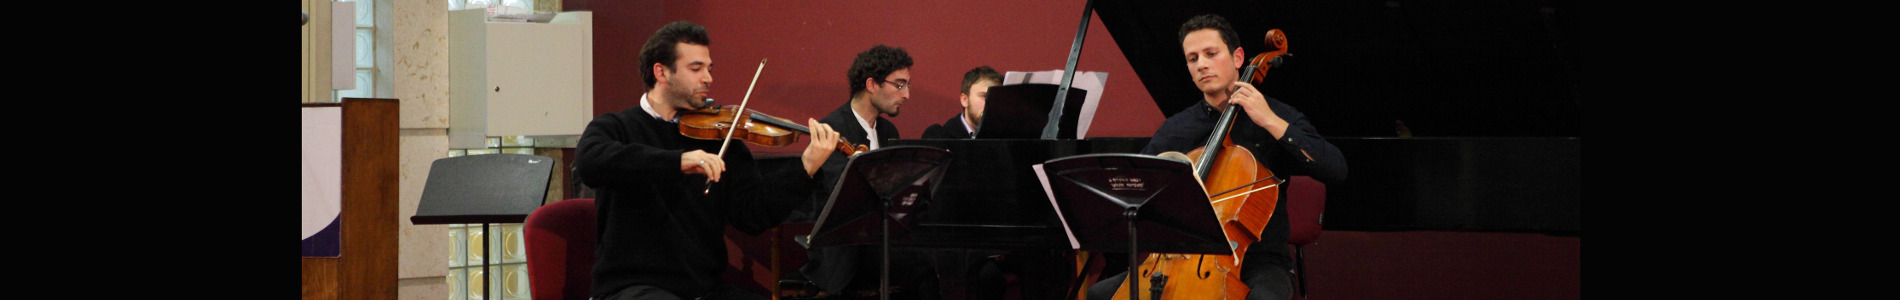 סיור קונצרטים משותף לסטודנטים מהאקדמיה למוסיקה ולמחול בירושלים ומהאקדמיה על שם ליסט בבודפשט